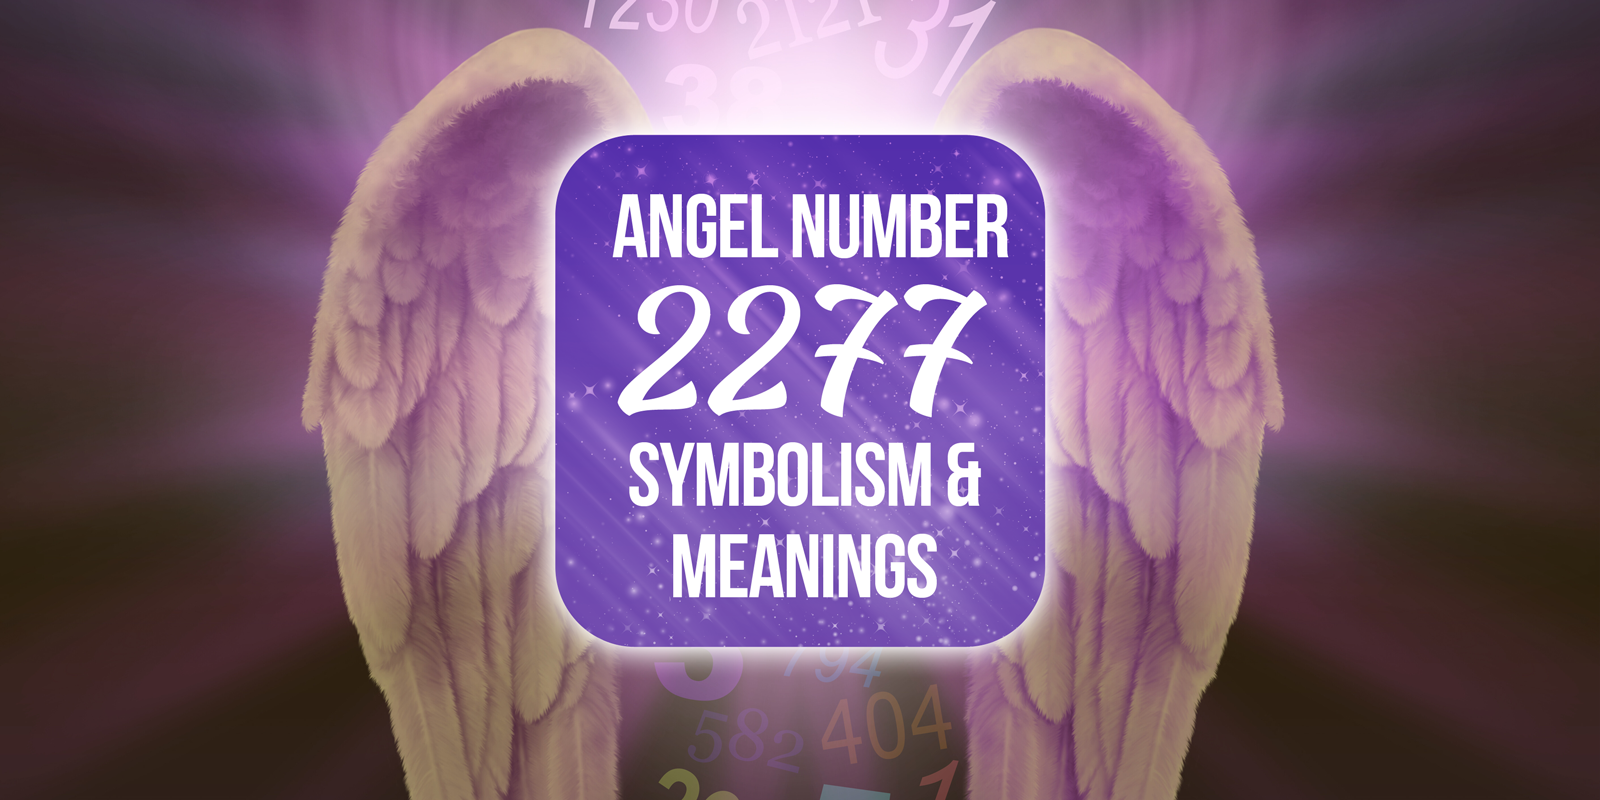 2277 angel number